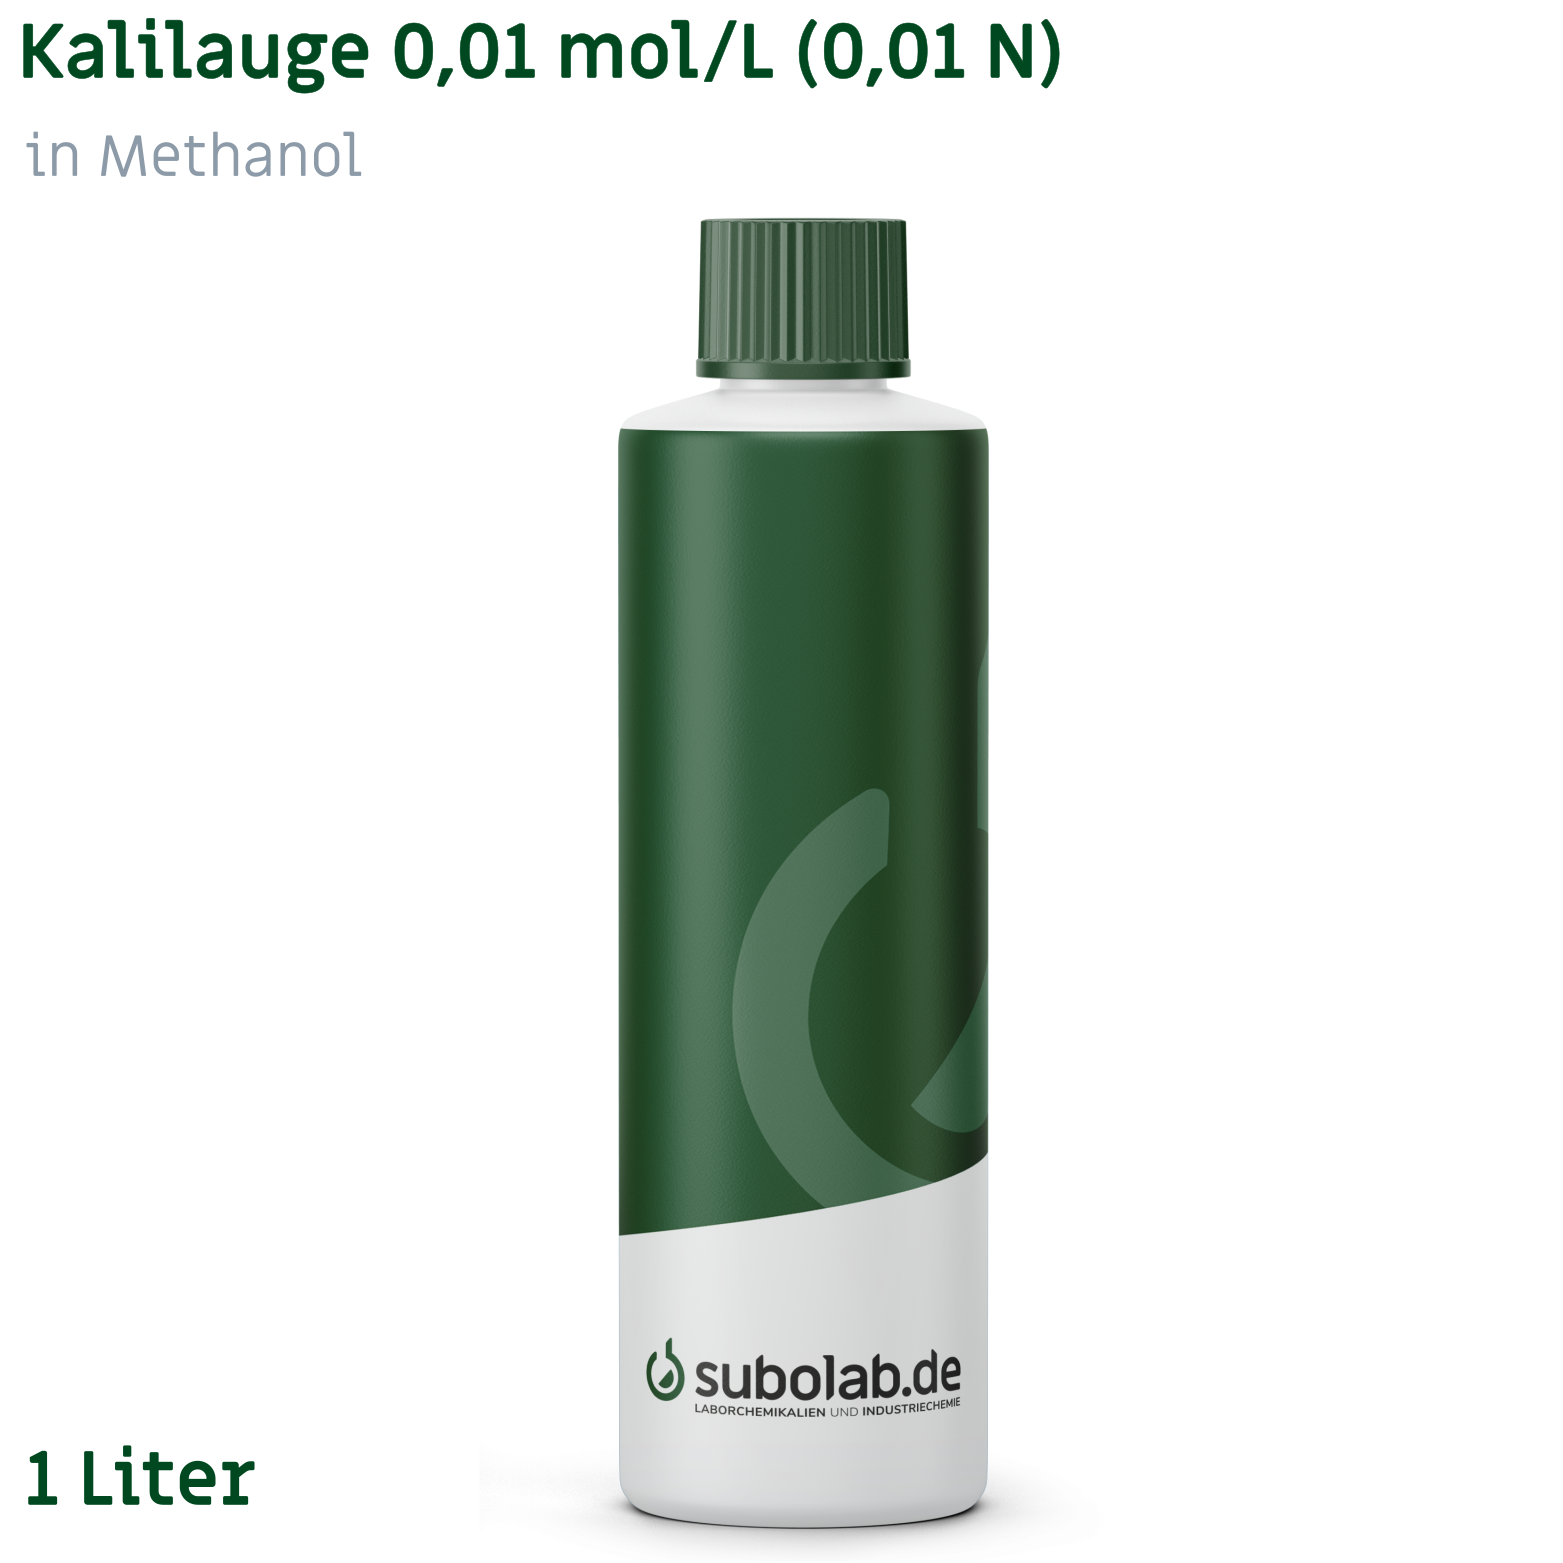 Bild von Kalilauge 0,01 mol/L (0,01 N) in Methanol (1 Liter)